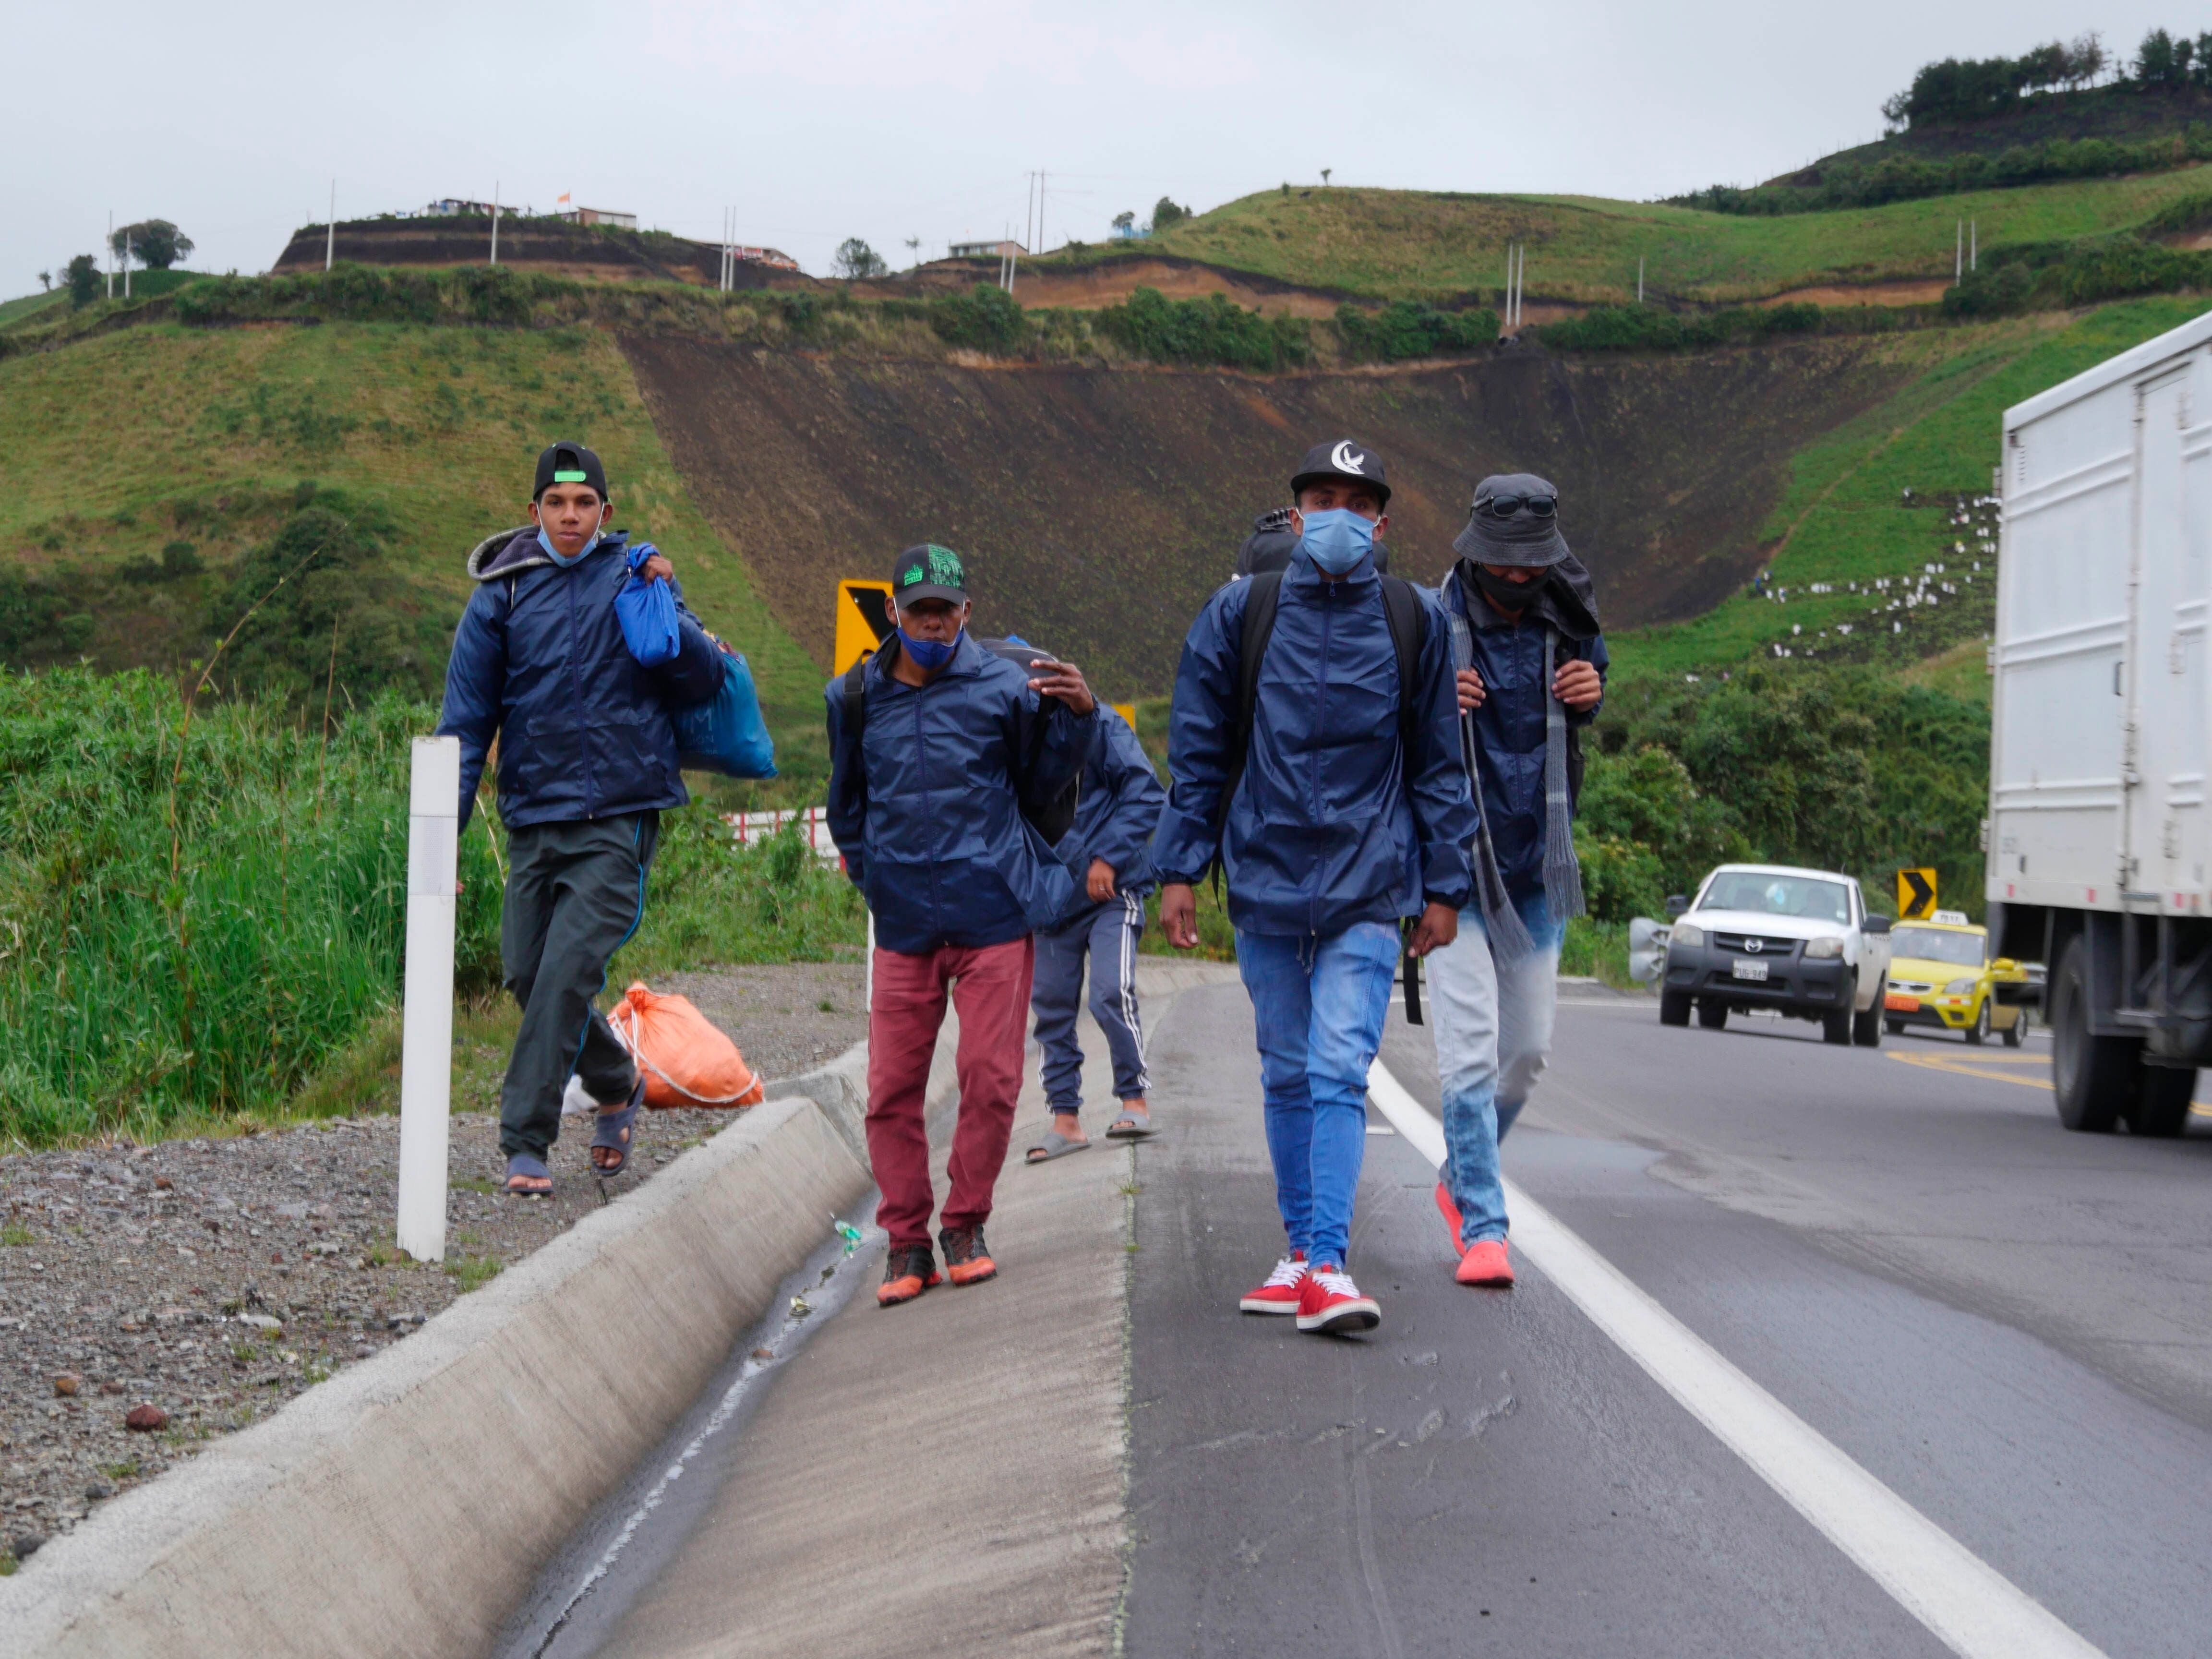 Grupos de migrantes venezolanos caminan por una carretera en la región de Tulcán (Ecuador). Foto de archivo. EFE/ Xavier Montalvo
